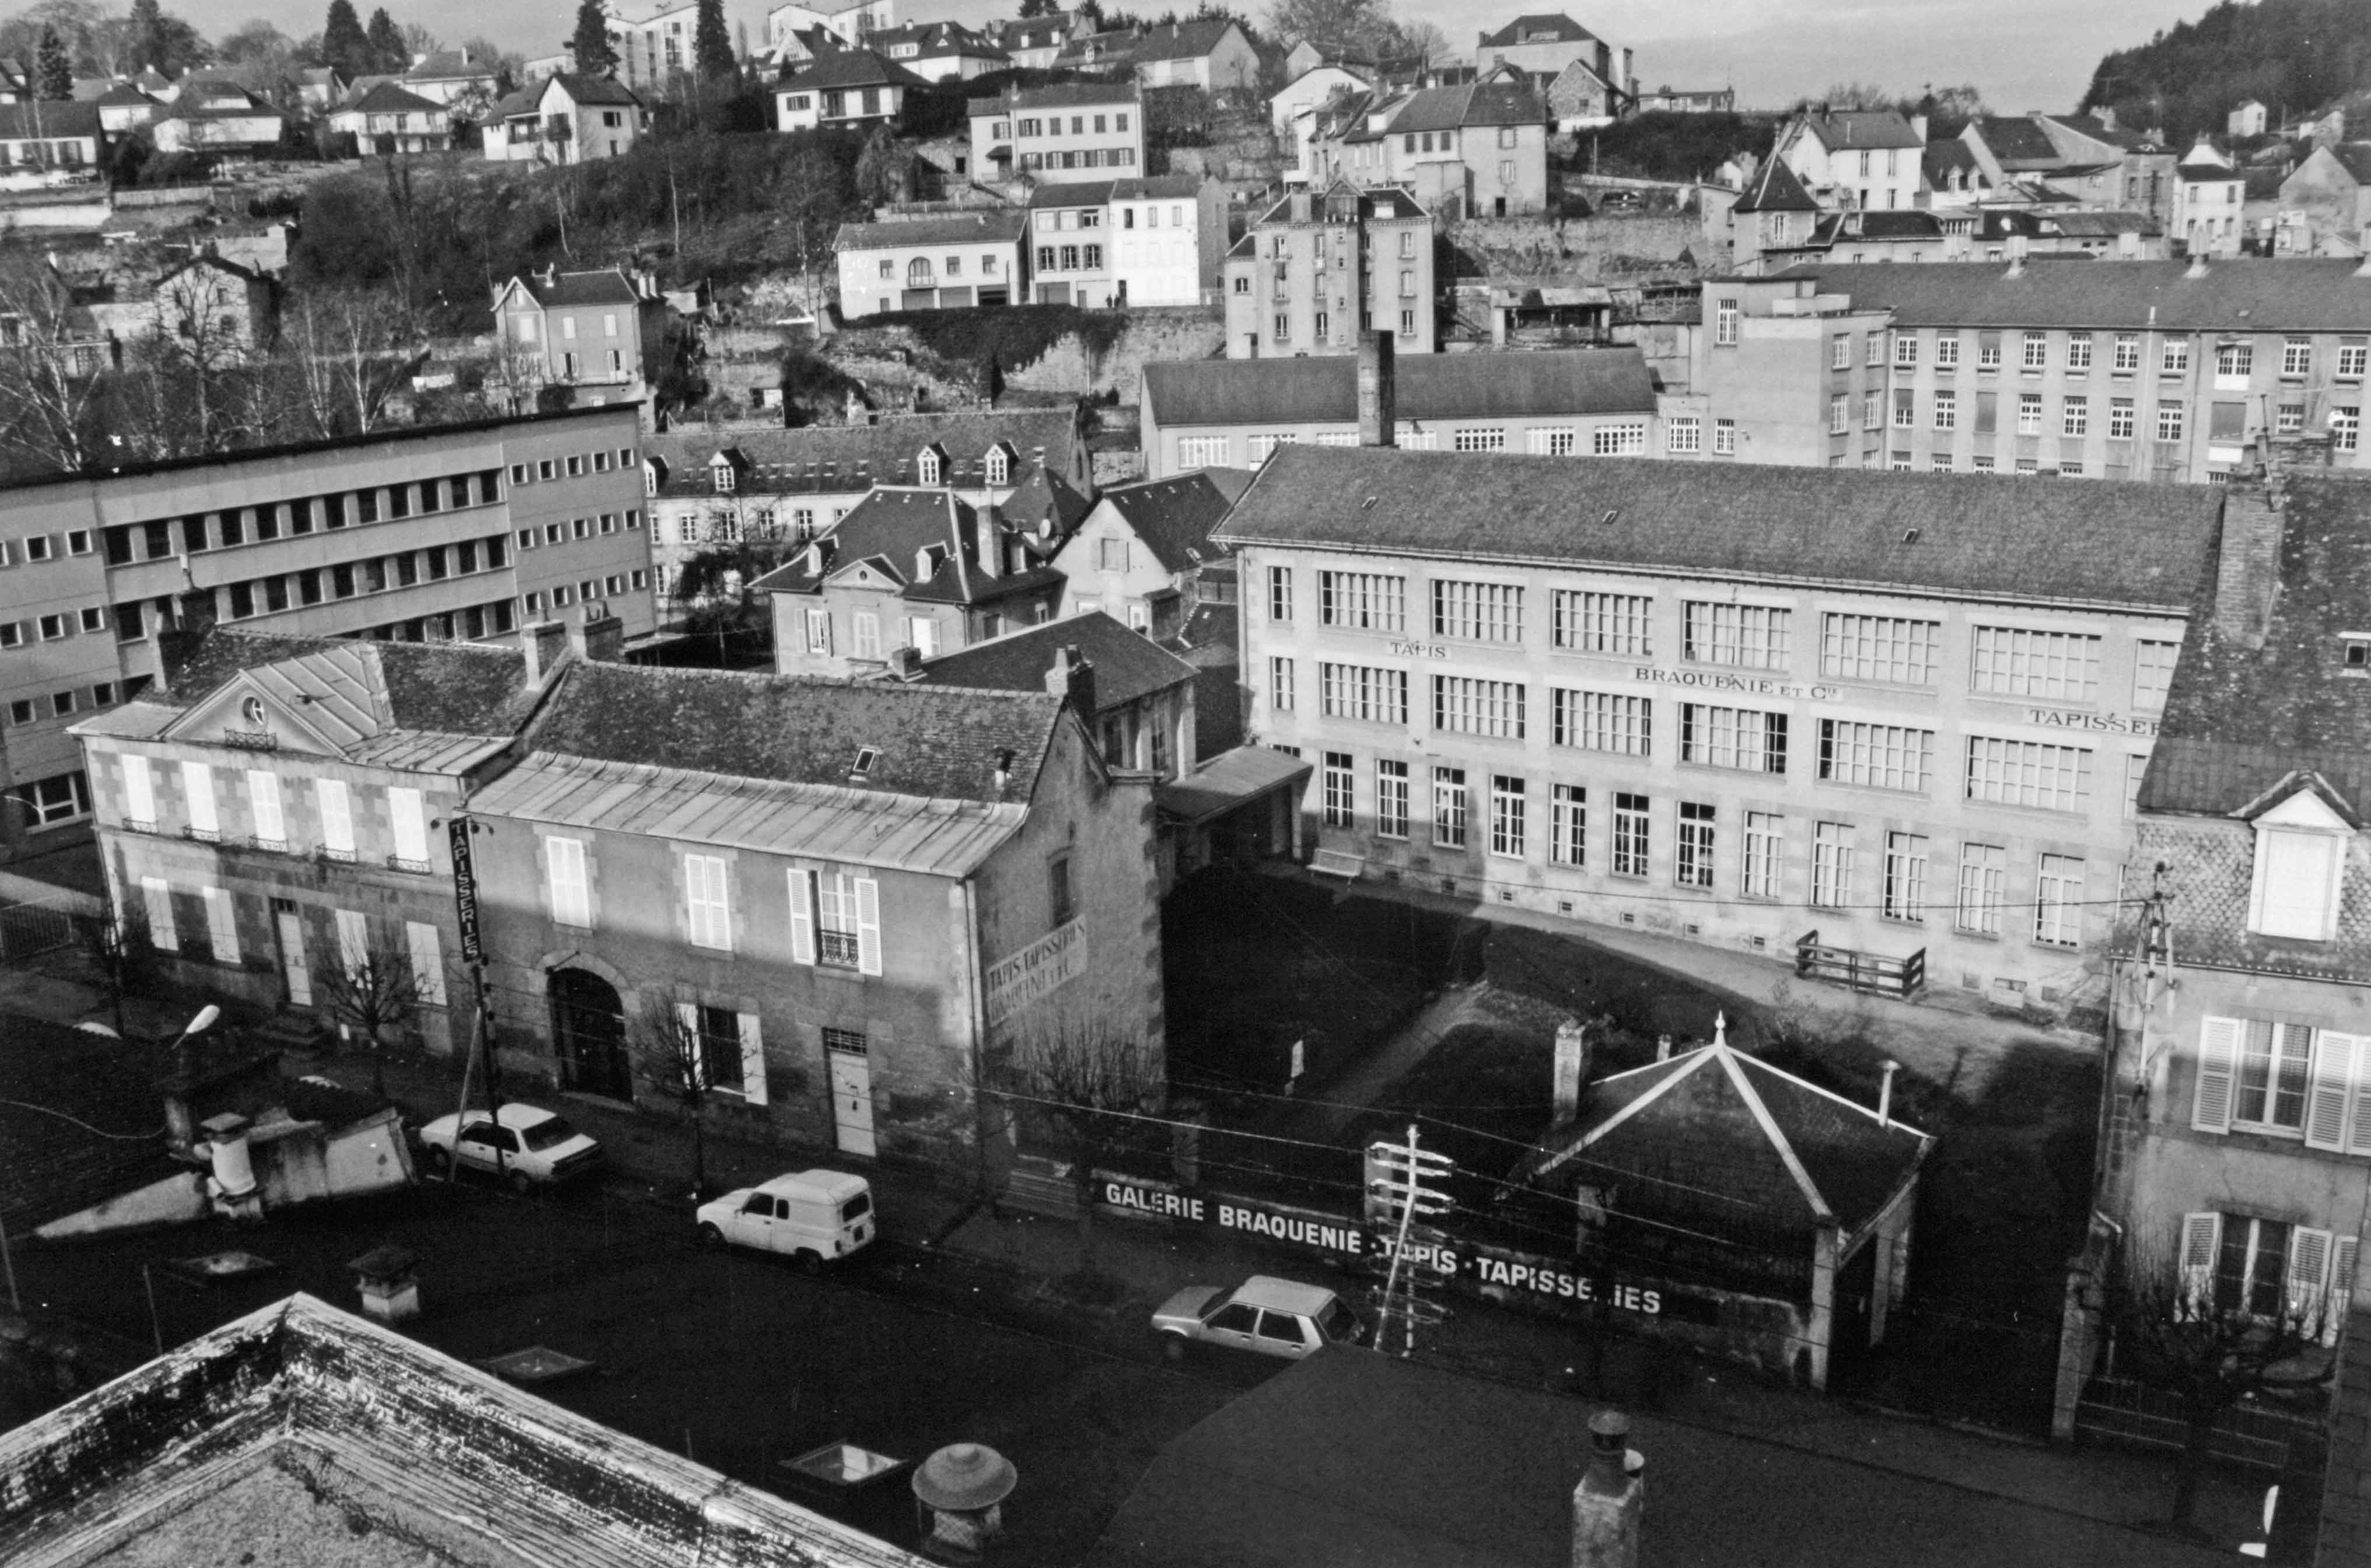 La manufacture Braquenié dans le tissu urbain, vue depuis les hauteurs du quartier Saint-Jean (reportage photographique de L. Yeghicheyan, 1992, Aubusson, Musée départemental de la Tapisserie)